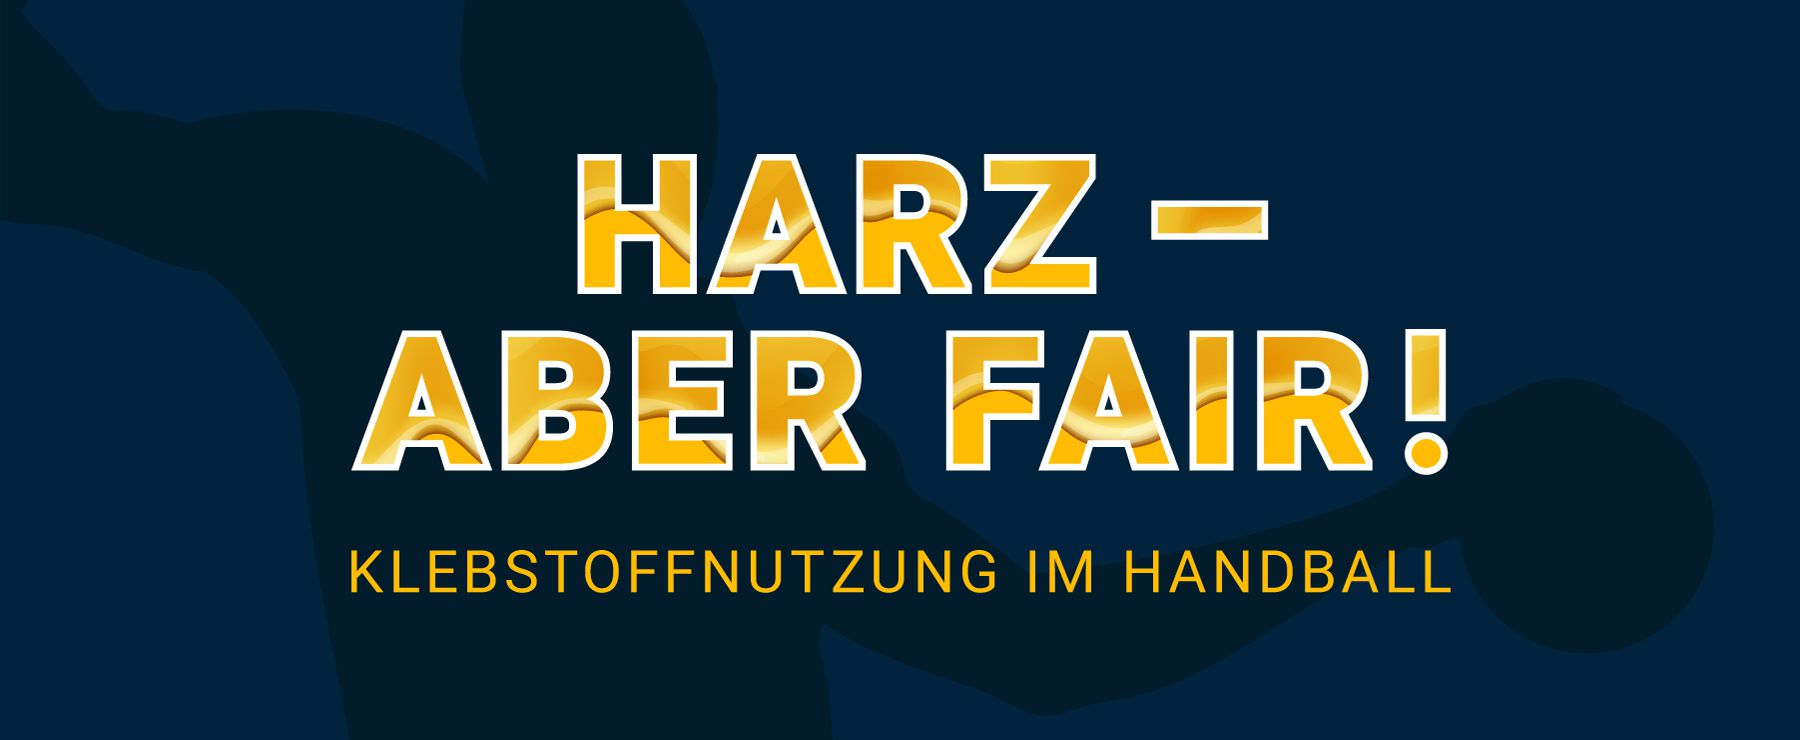 Klebstoffnutzung im Handball: Harz – aber fair!